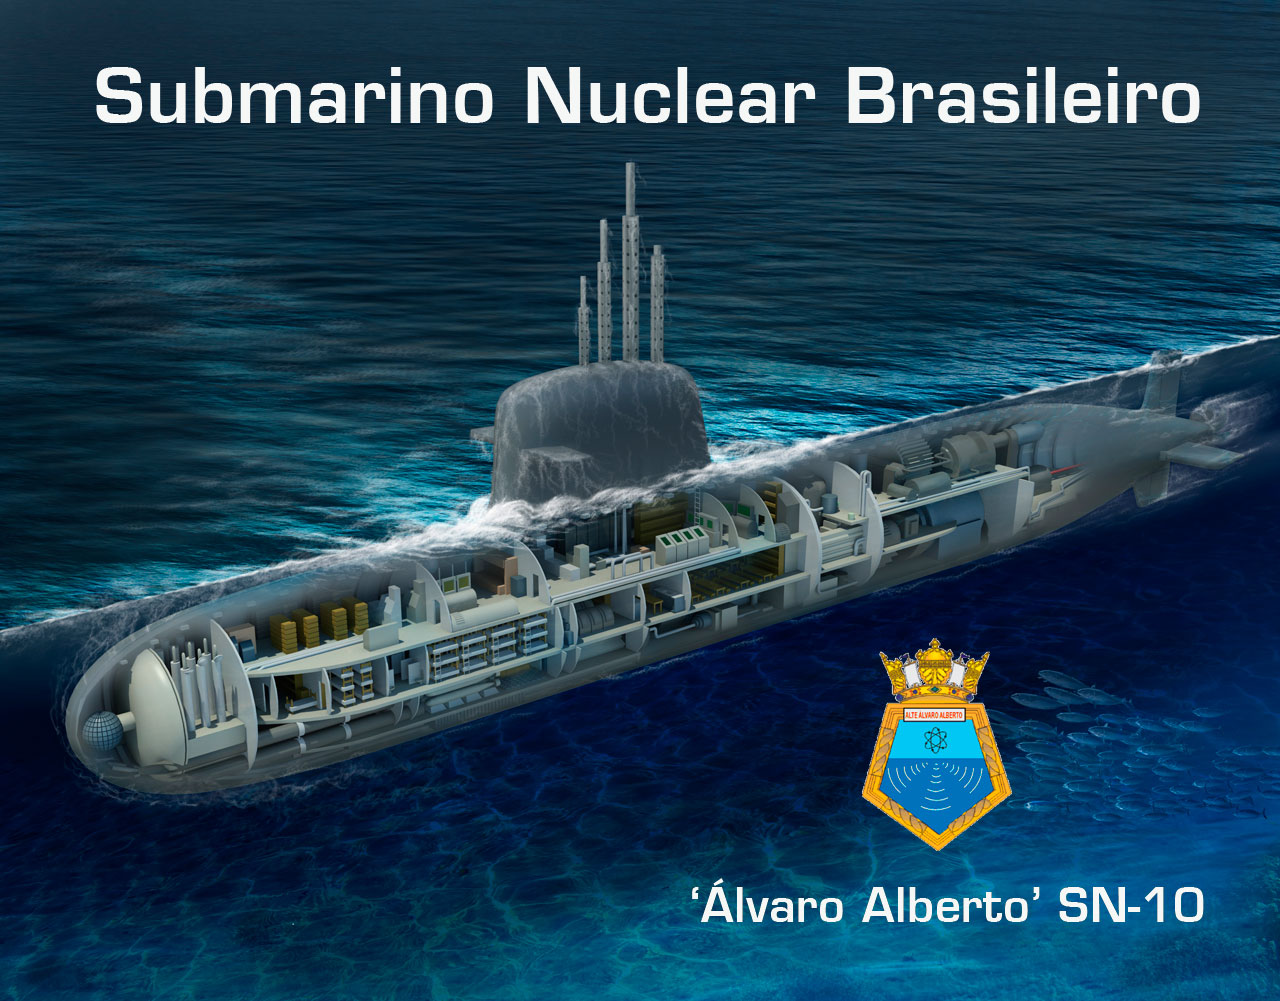 SNB Álvaro Alberto SN-10 - Imagem editada a partir de original de Rubem Paiva